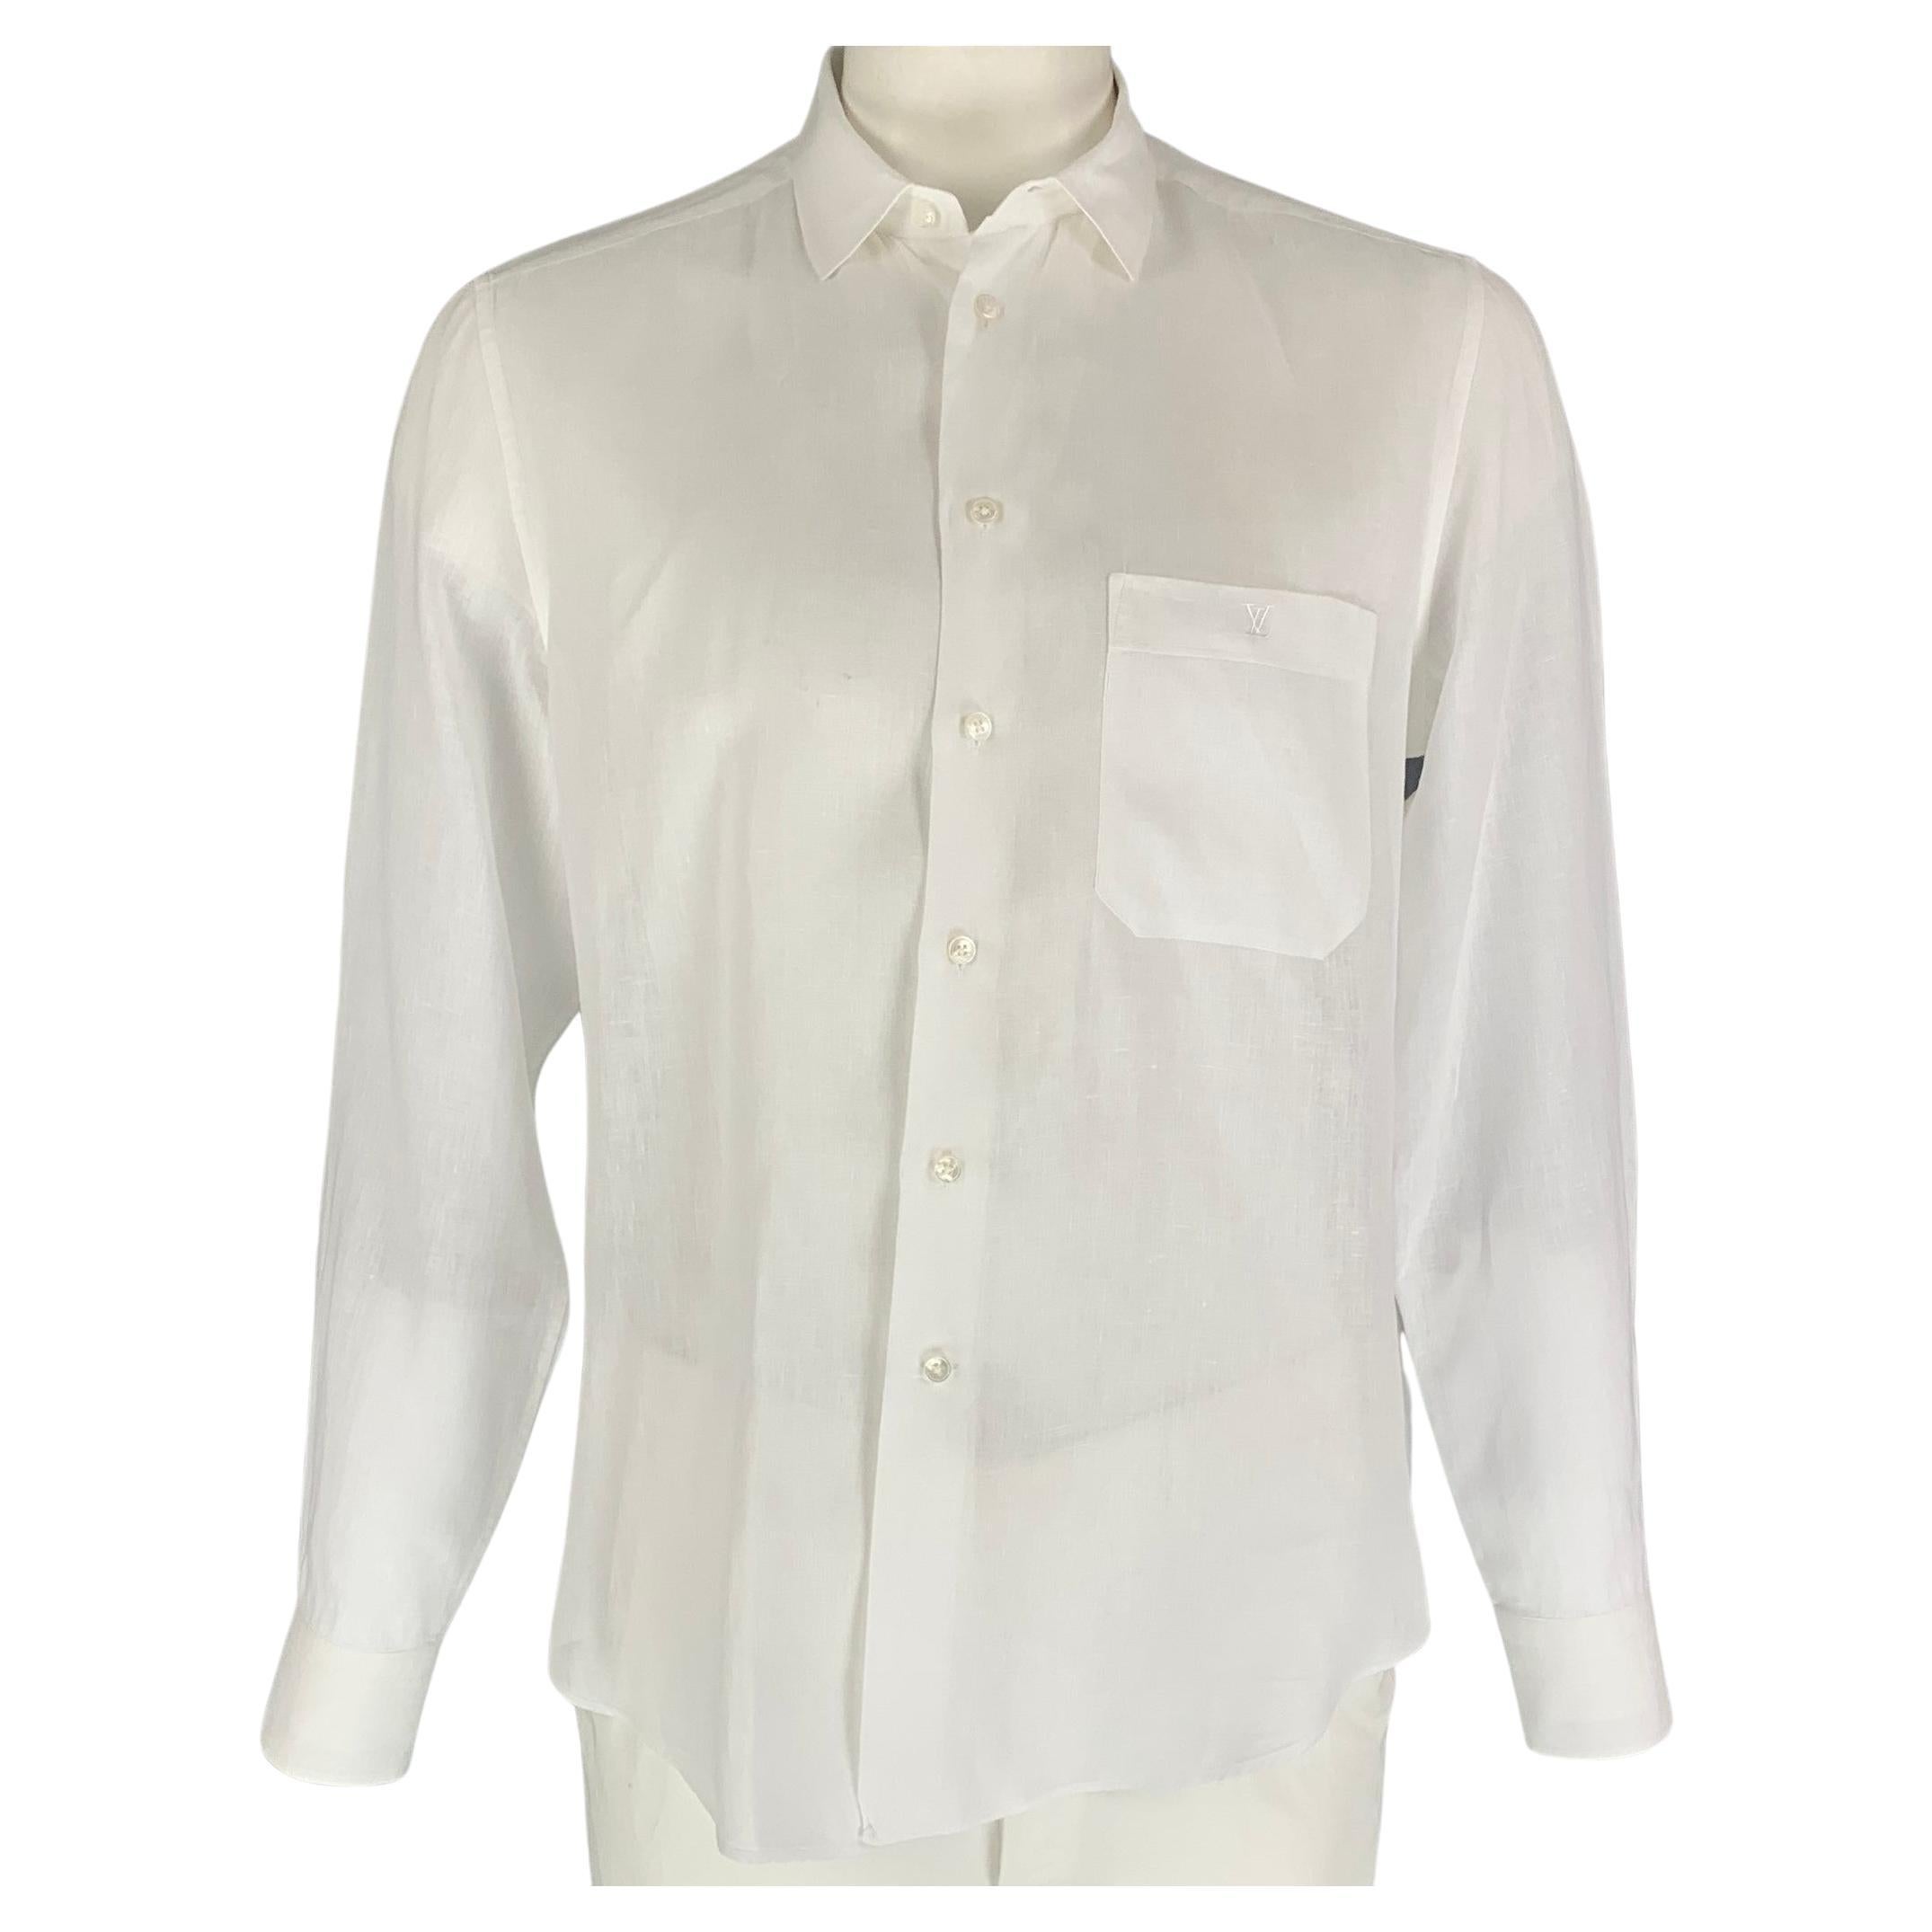 LOUIS VUITTON Size XL White Linen Button Up Long Sleeve Shirt